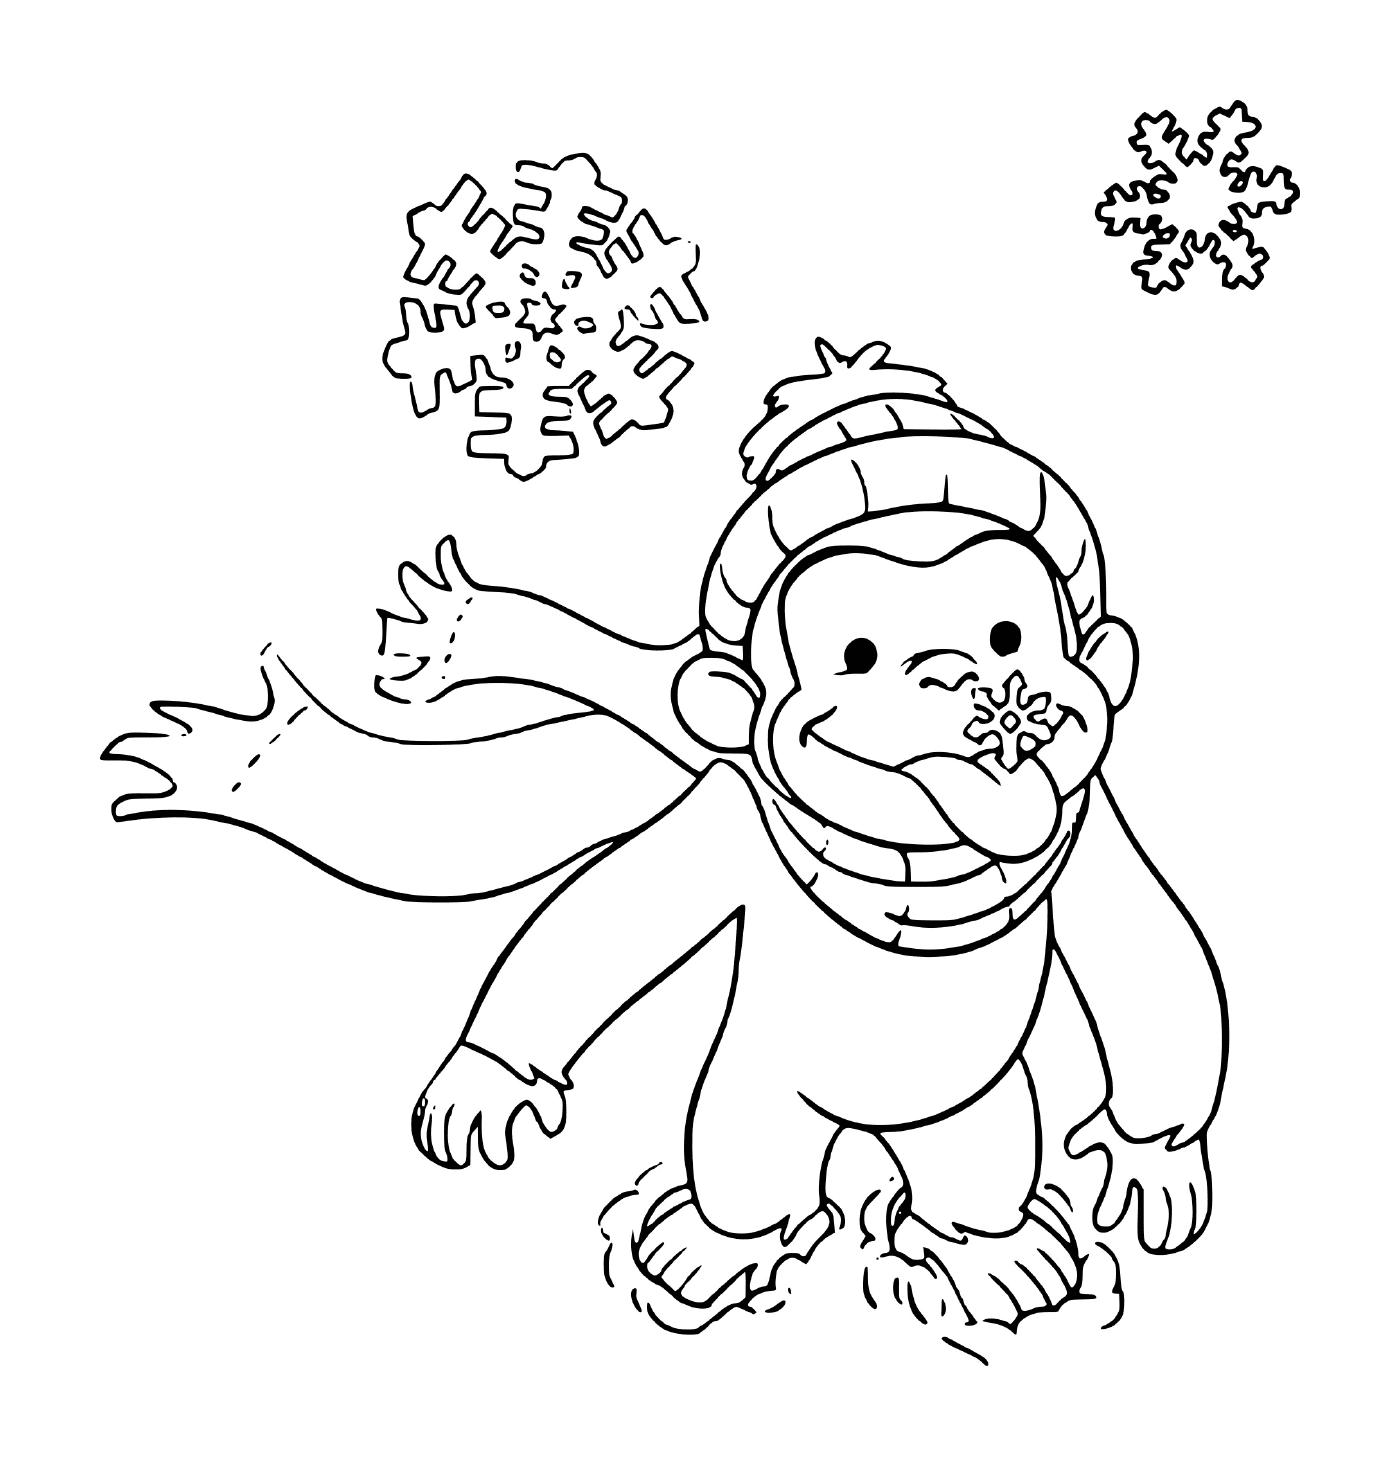  白雪中戴帽子的猴子 